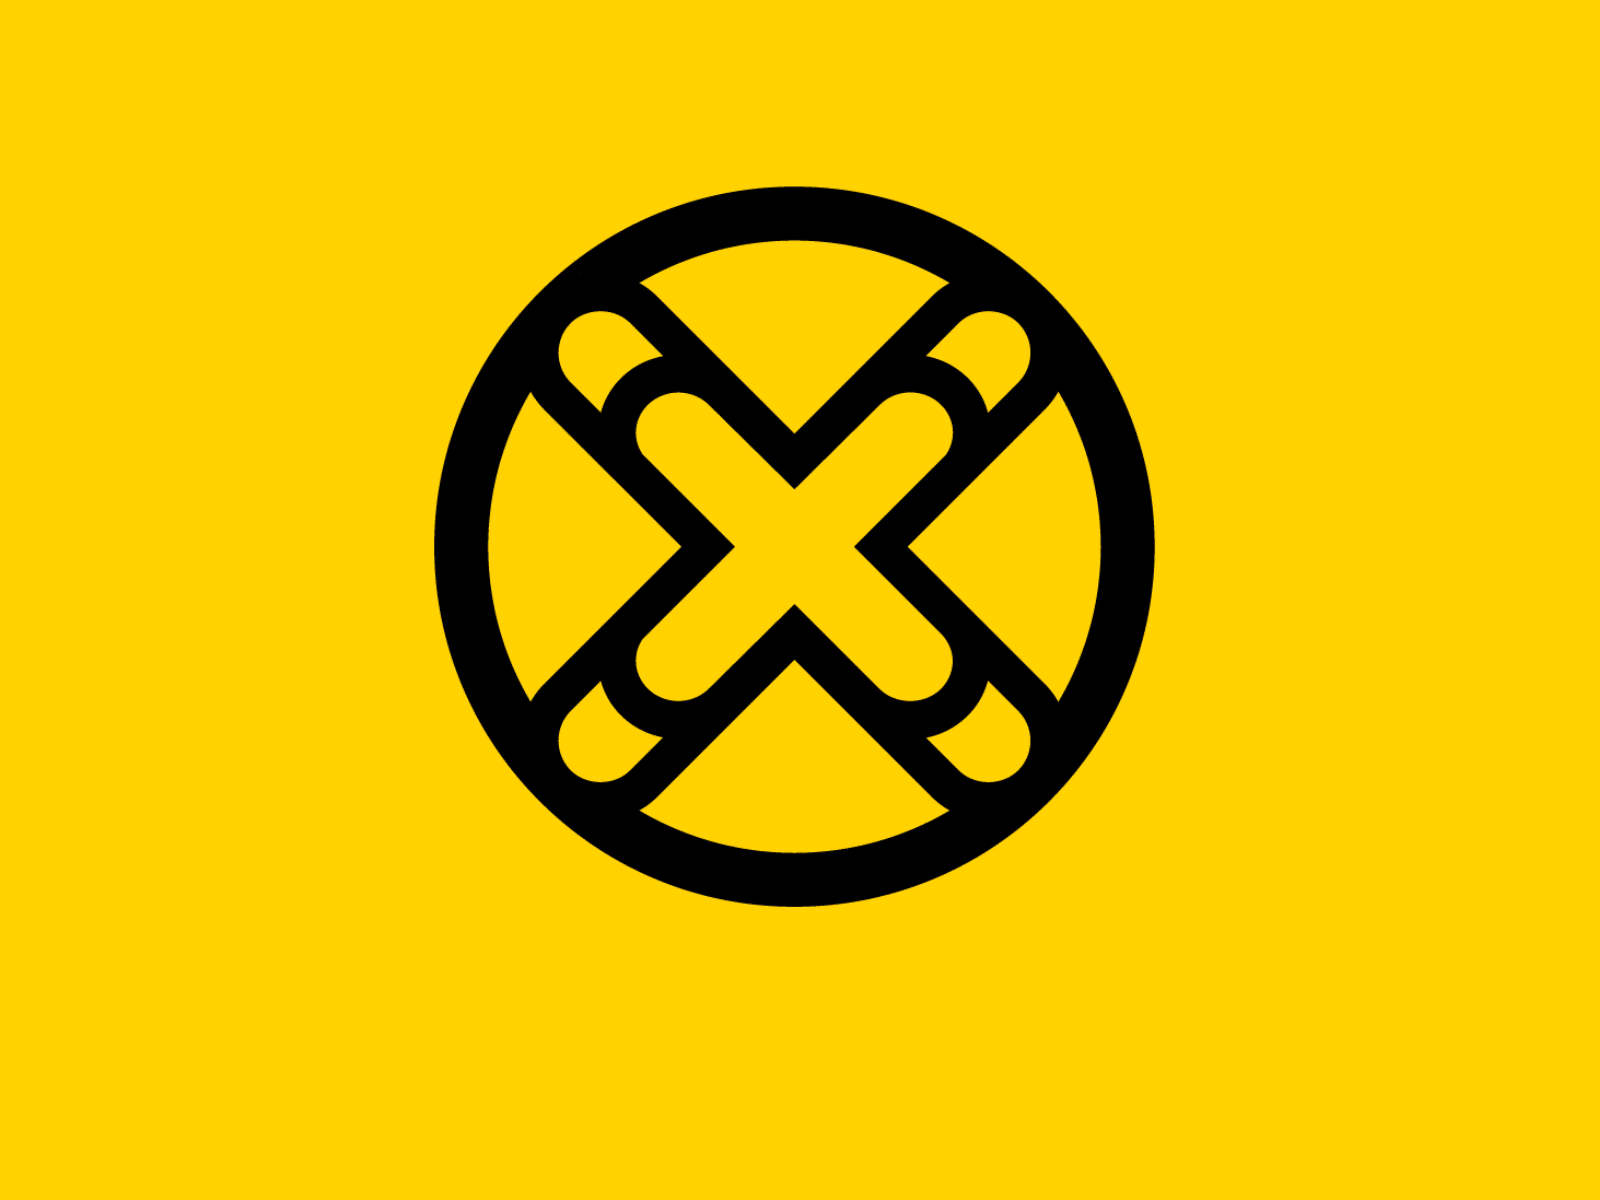 Oxx logo animation animation